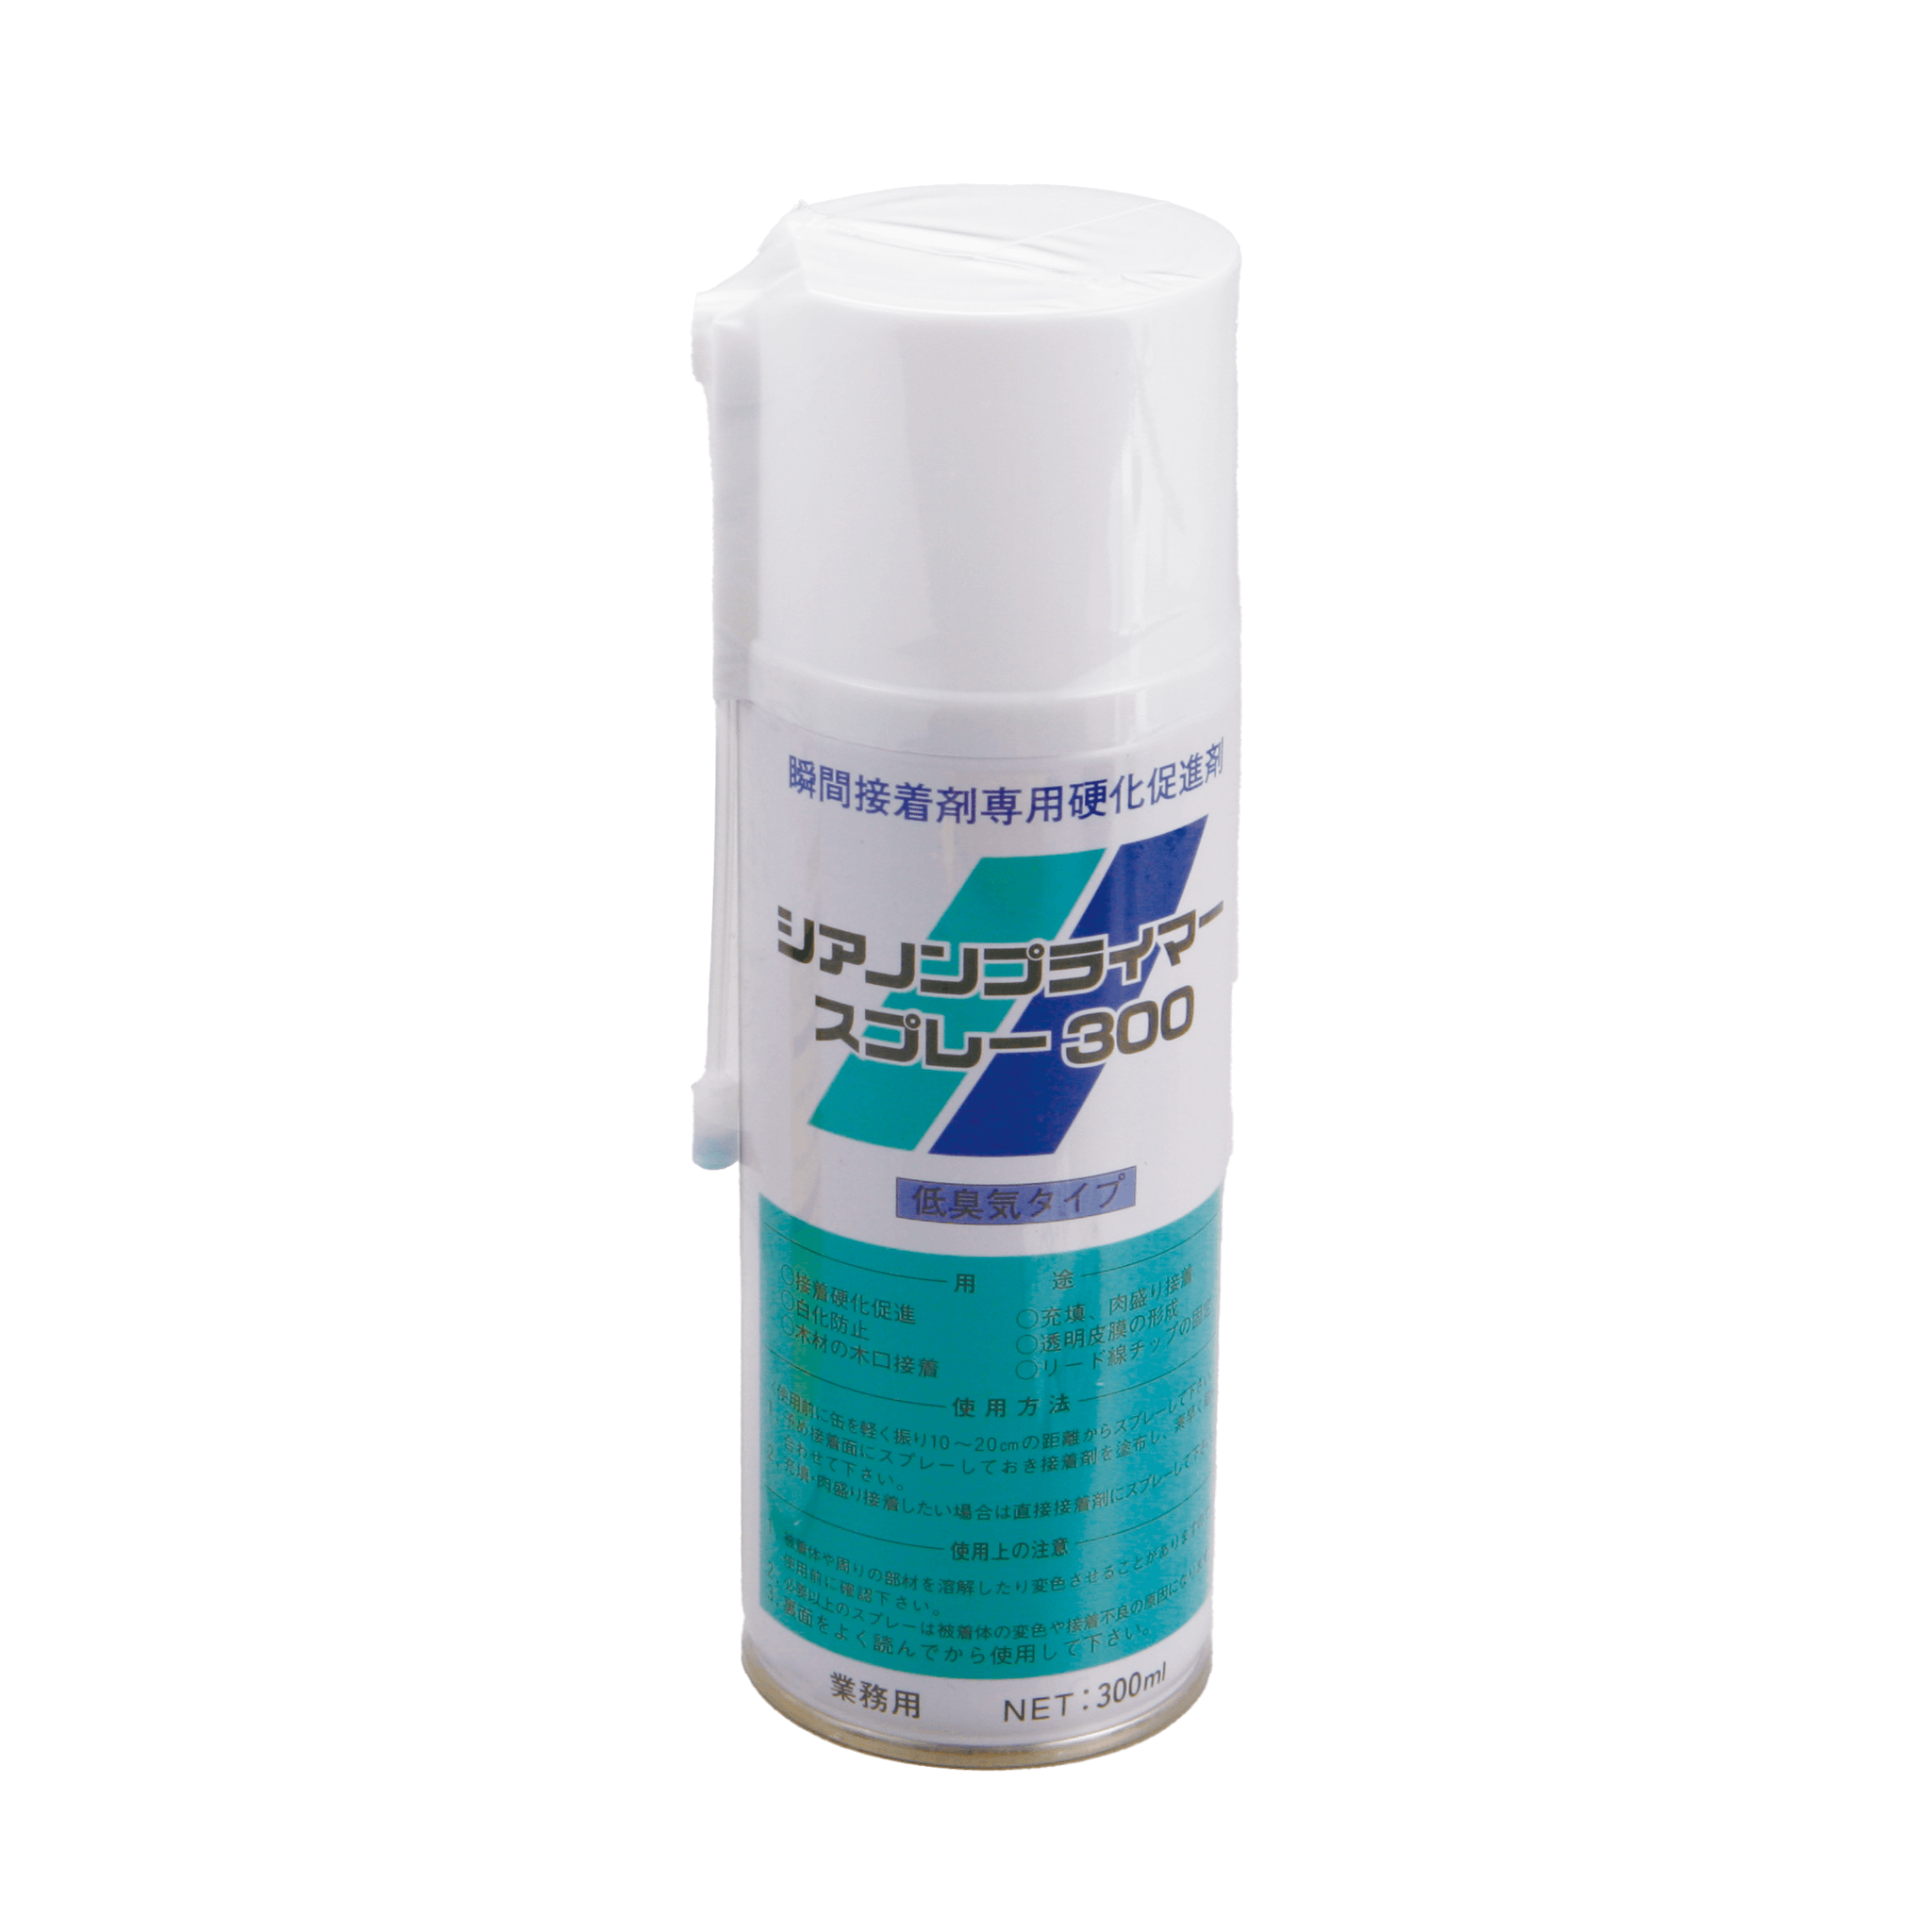 3缶セット 作動油 AW46 20L缶 ペール缶 コスモ ハイドロリックオイル 【50%OFF!】 - 洗車、ケミカル用品